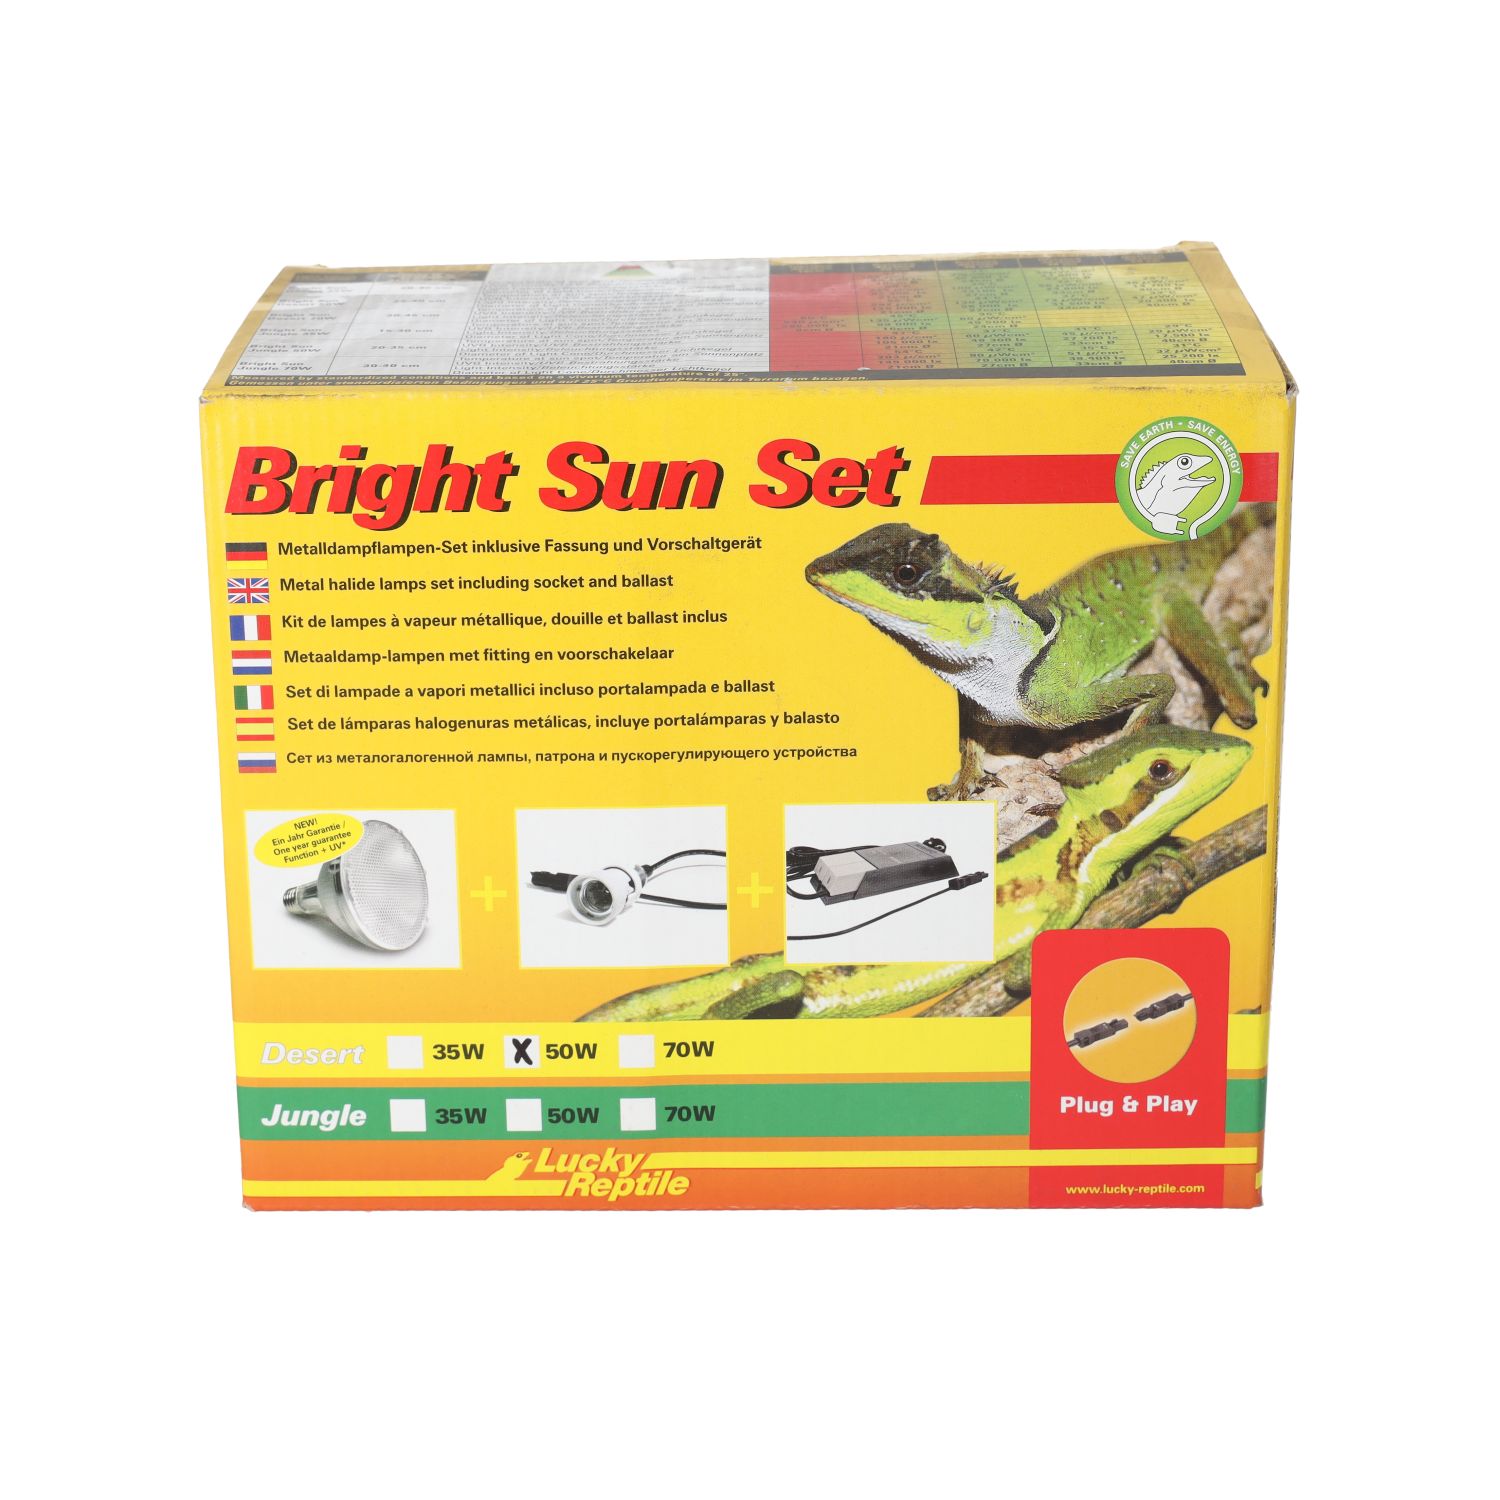 LR Bright Sun Evo SET Desert 50W, BSS-D50